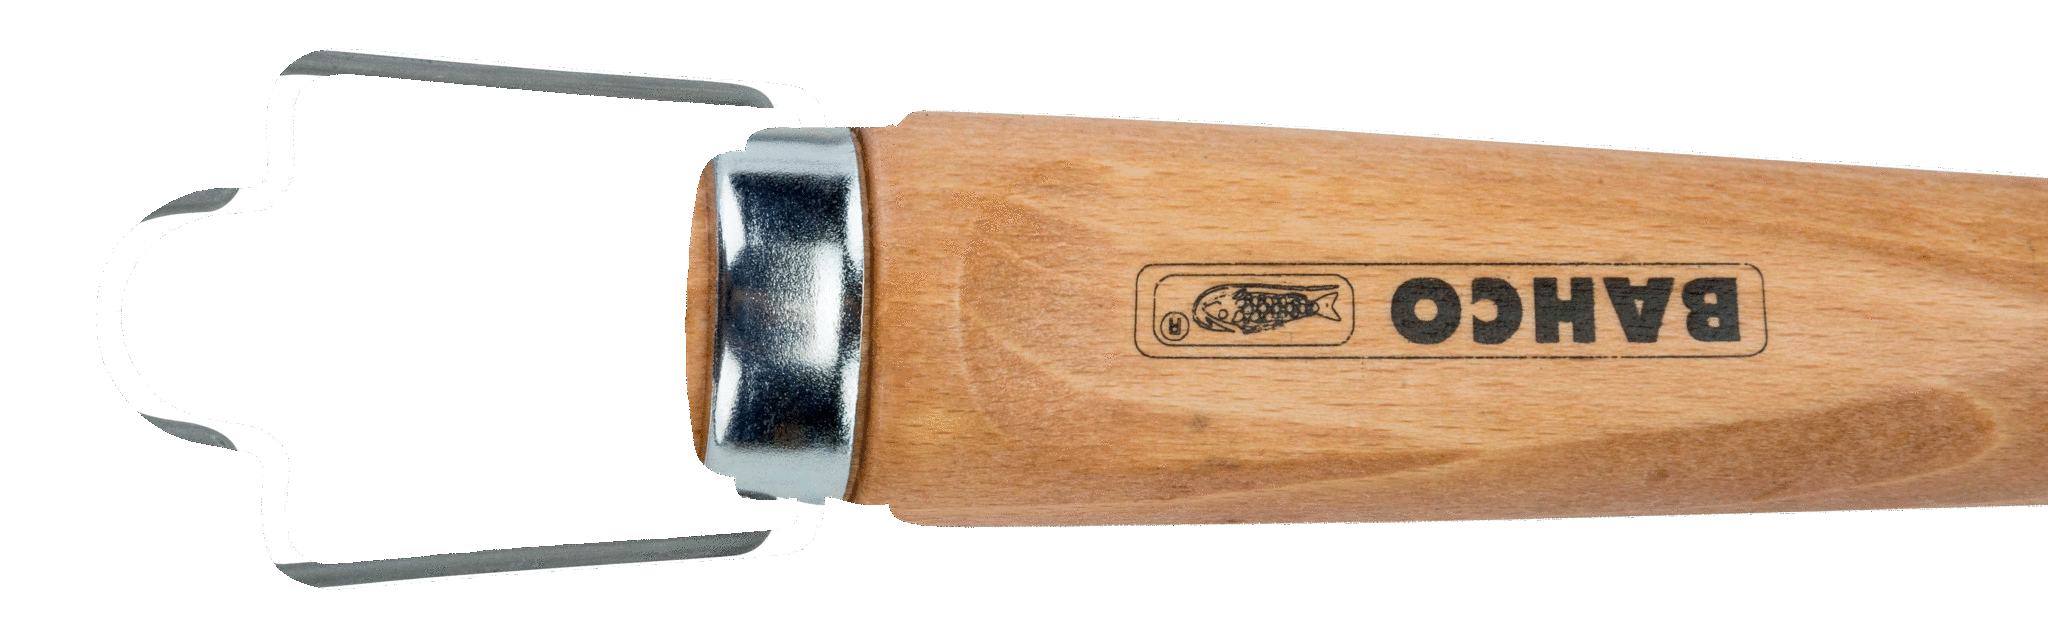 картинка Стамеска с деревянной рукояткой BAHCO 425-12 от магазина "Элит-инструмент"